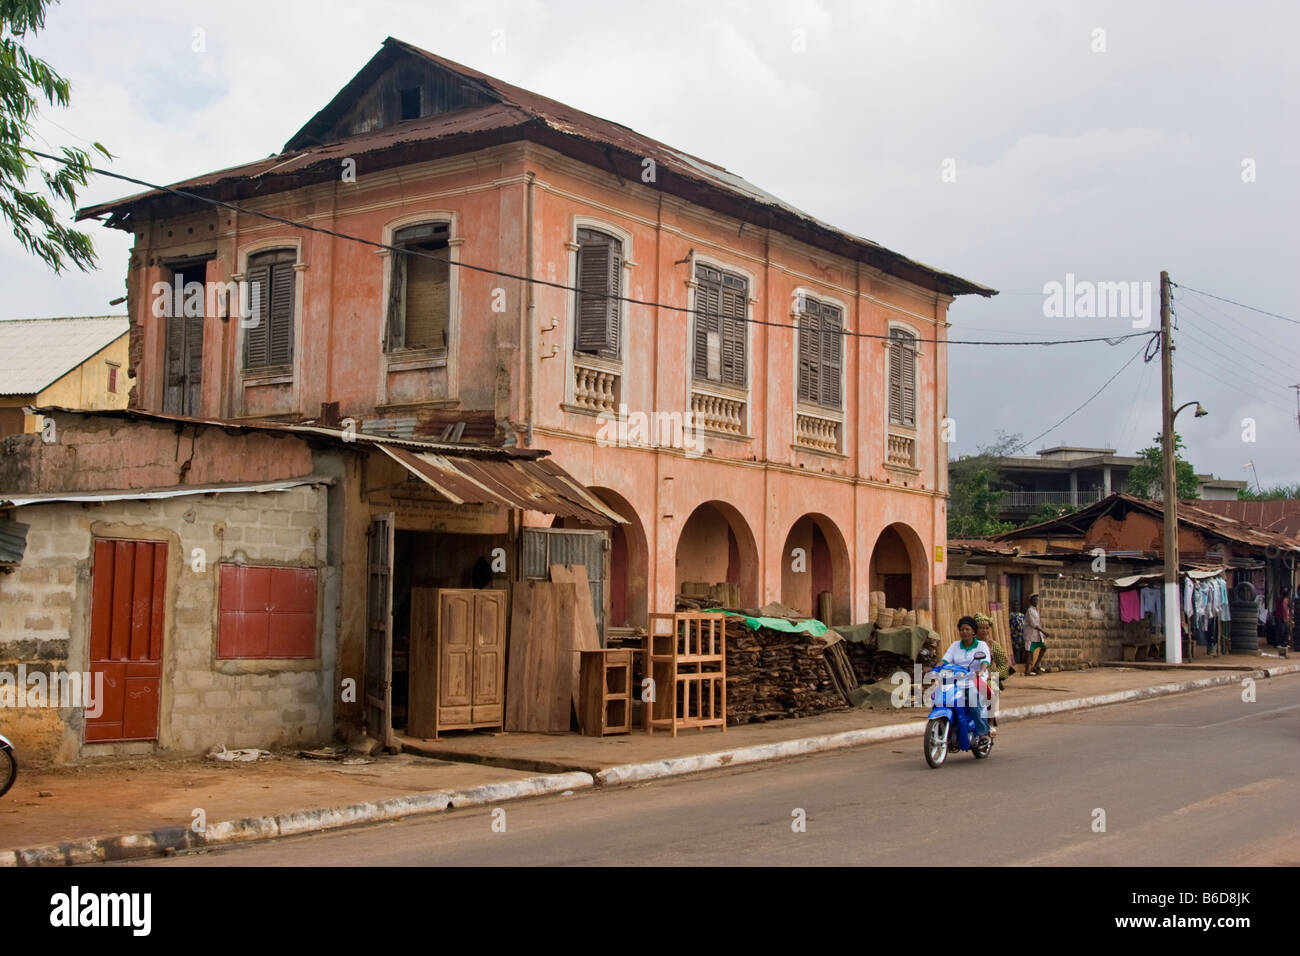 Colonial era architecture in Porto Novo the capital of Benin Stock Photo